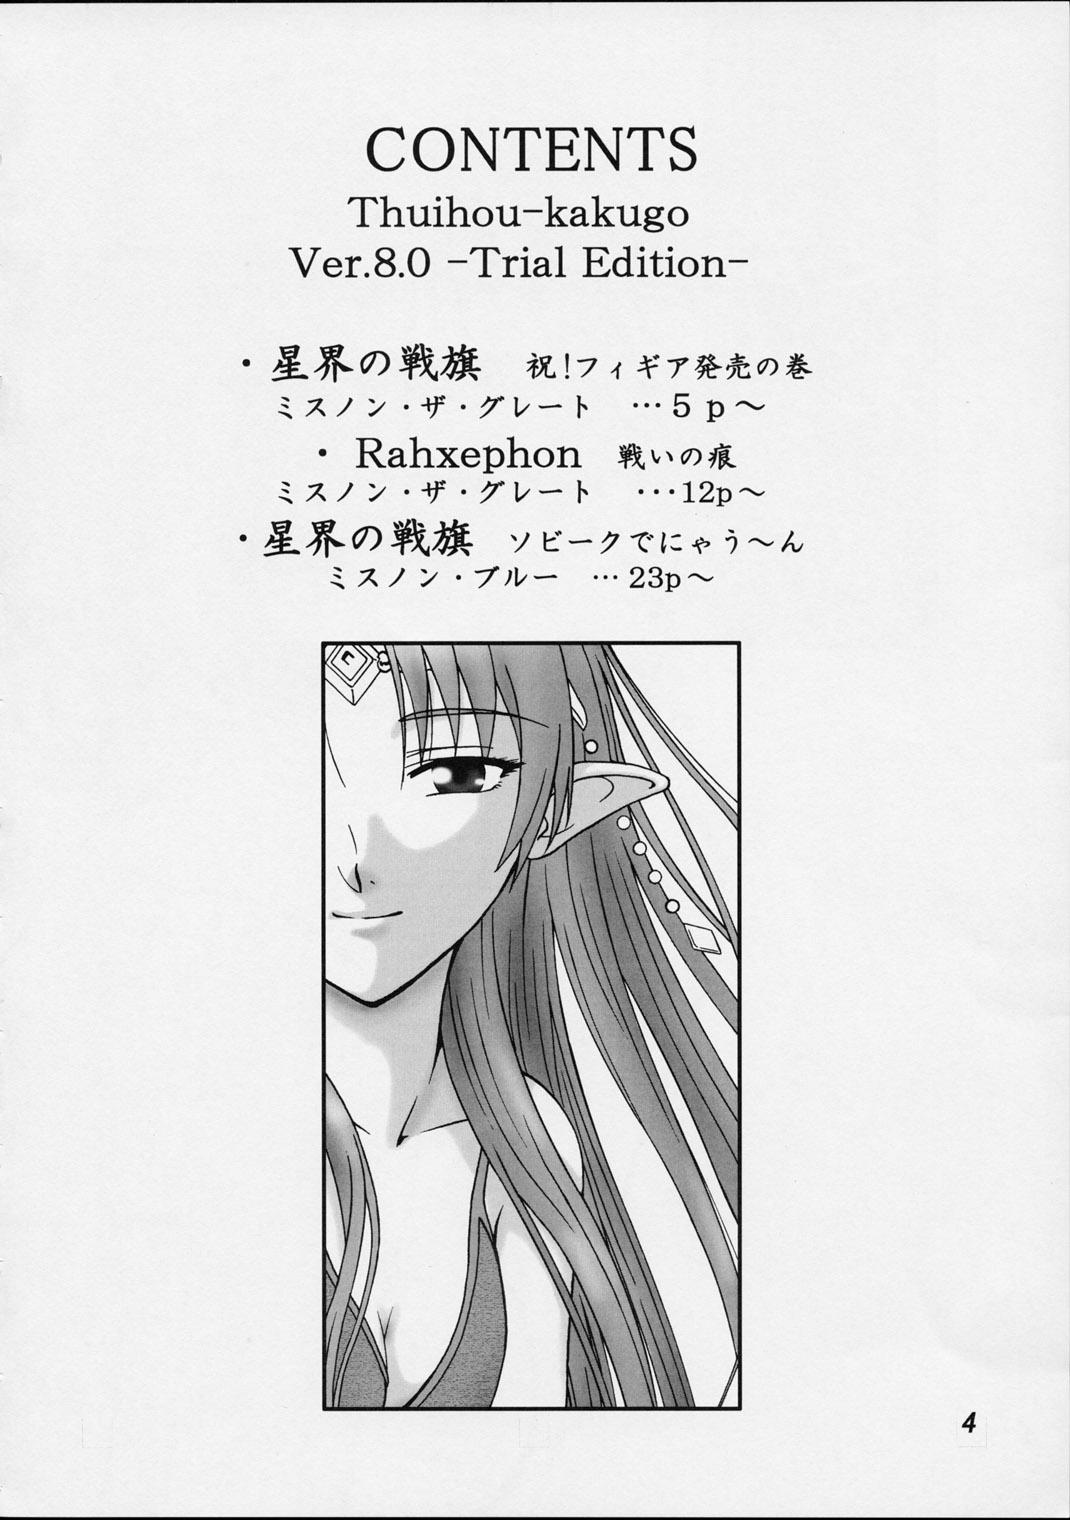 Hymen (C62) [Oretachi Misnon Ikka (Misnon the Great, Misnon Blue)] Thuihou-kakugo Ver.8.0 -Trial Edition- (Seikai no Senki, RahXephon) - Banner of the stars Rahxephon Scene - Page 3